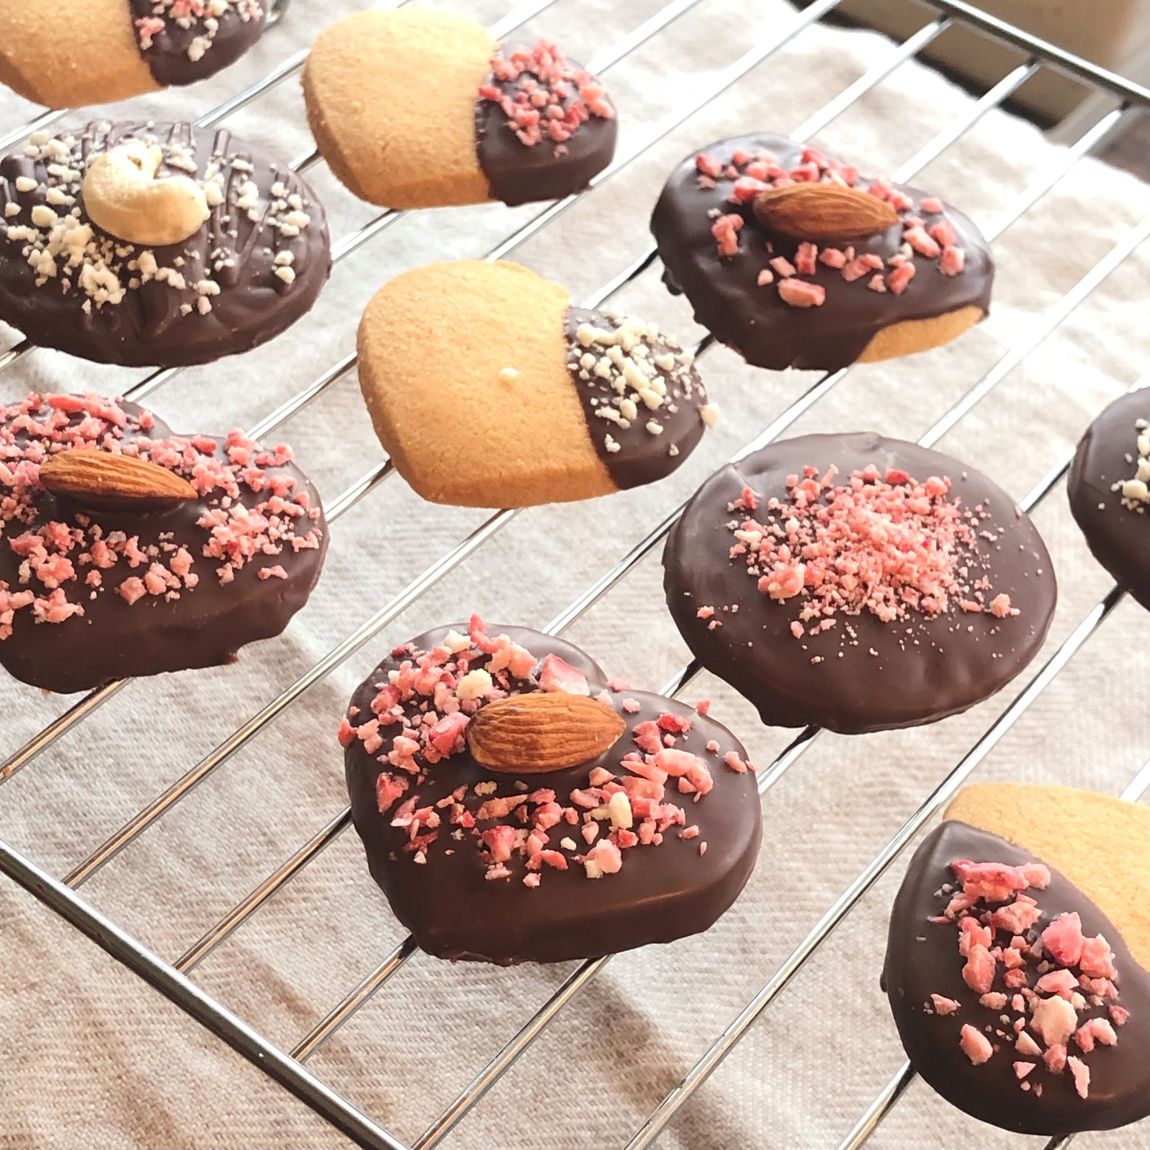 西友荻窪 バレンタインキットでアレンジレシピ キーマタルトとチョコがけデコクッキー 無印良品